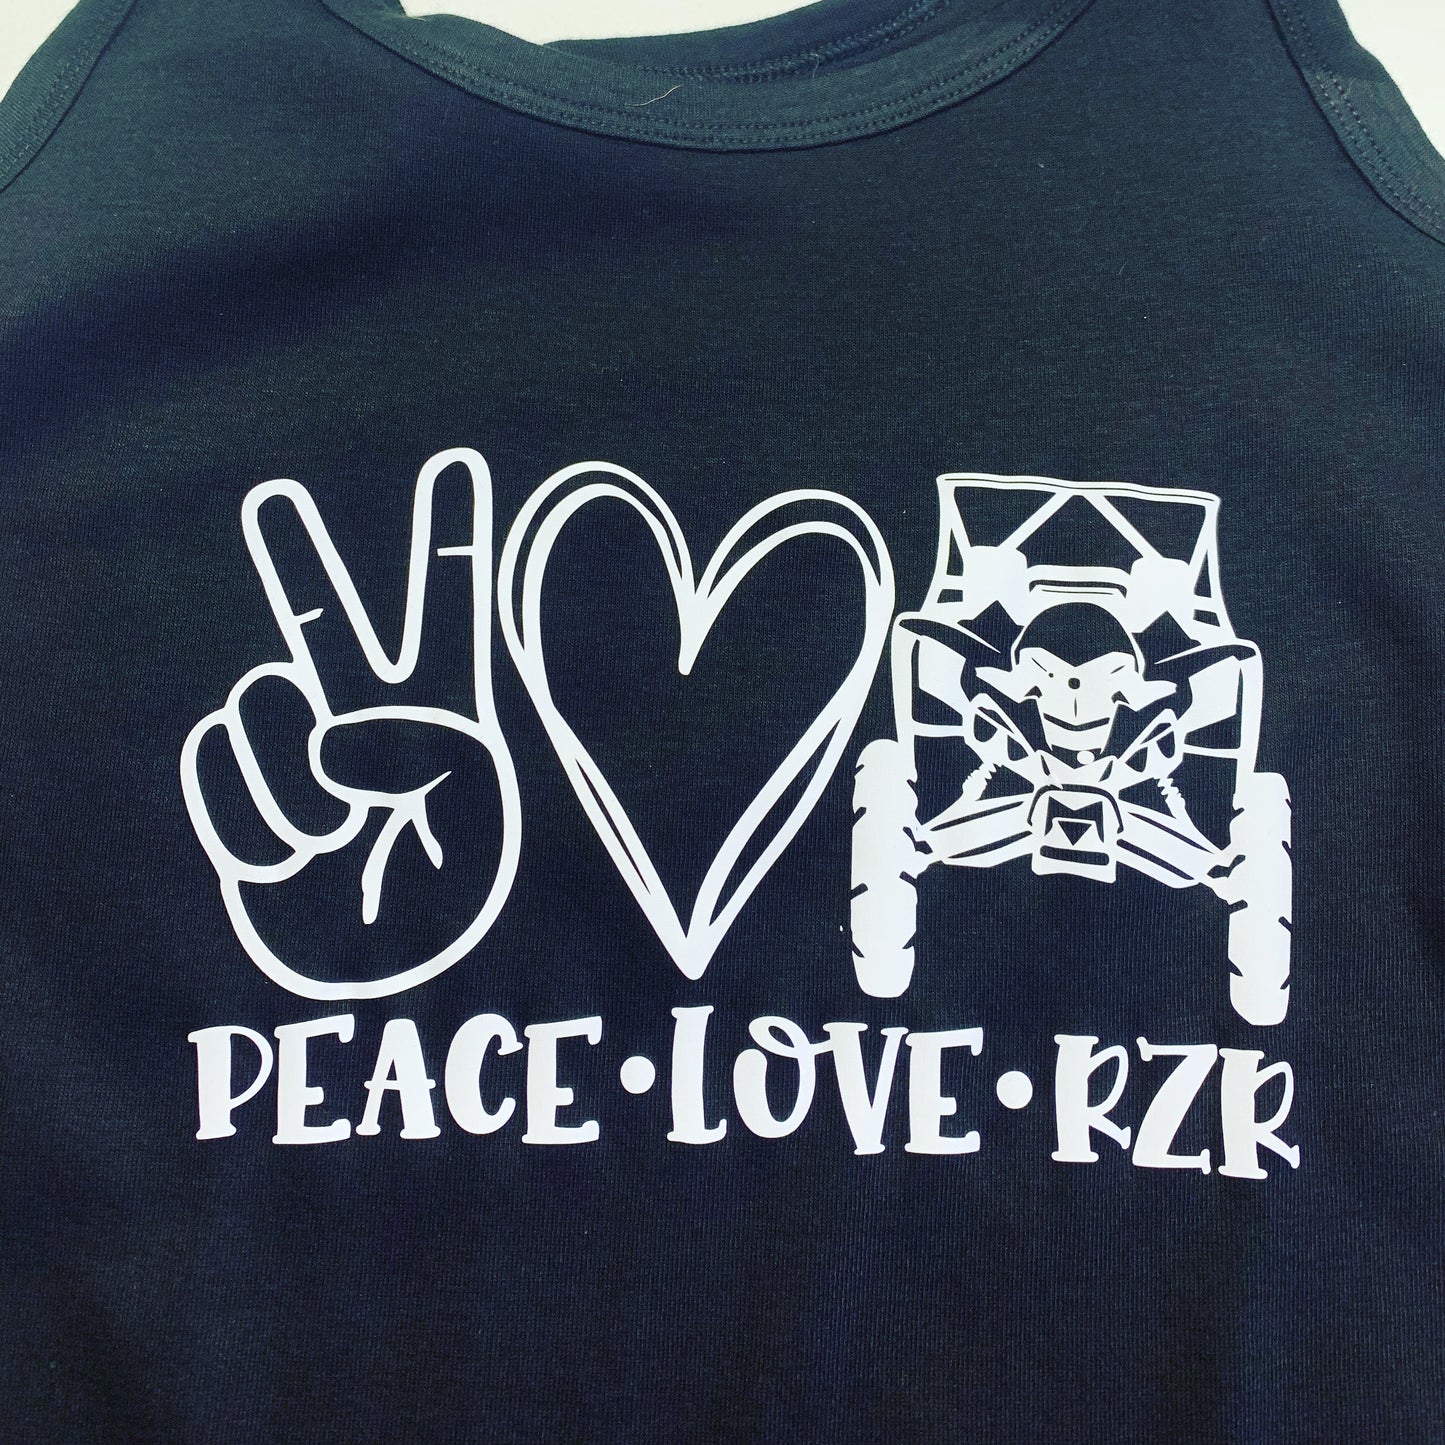 Peace love RZR tank top